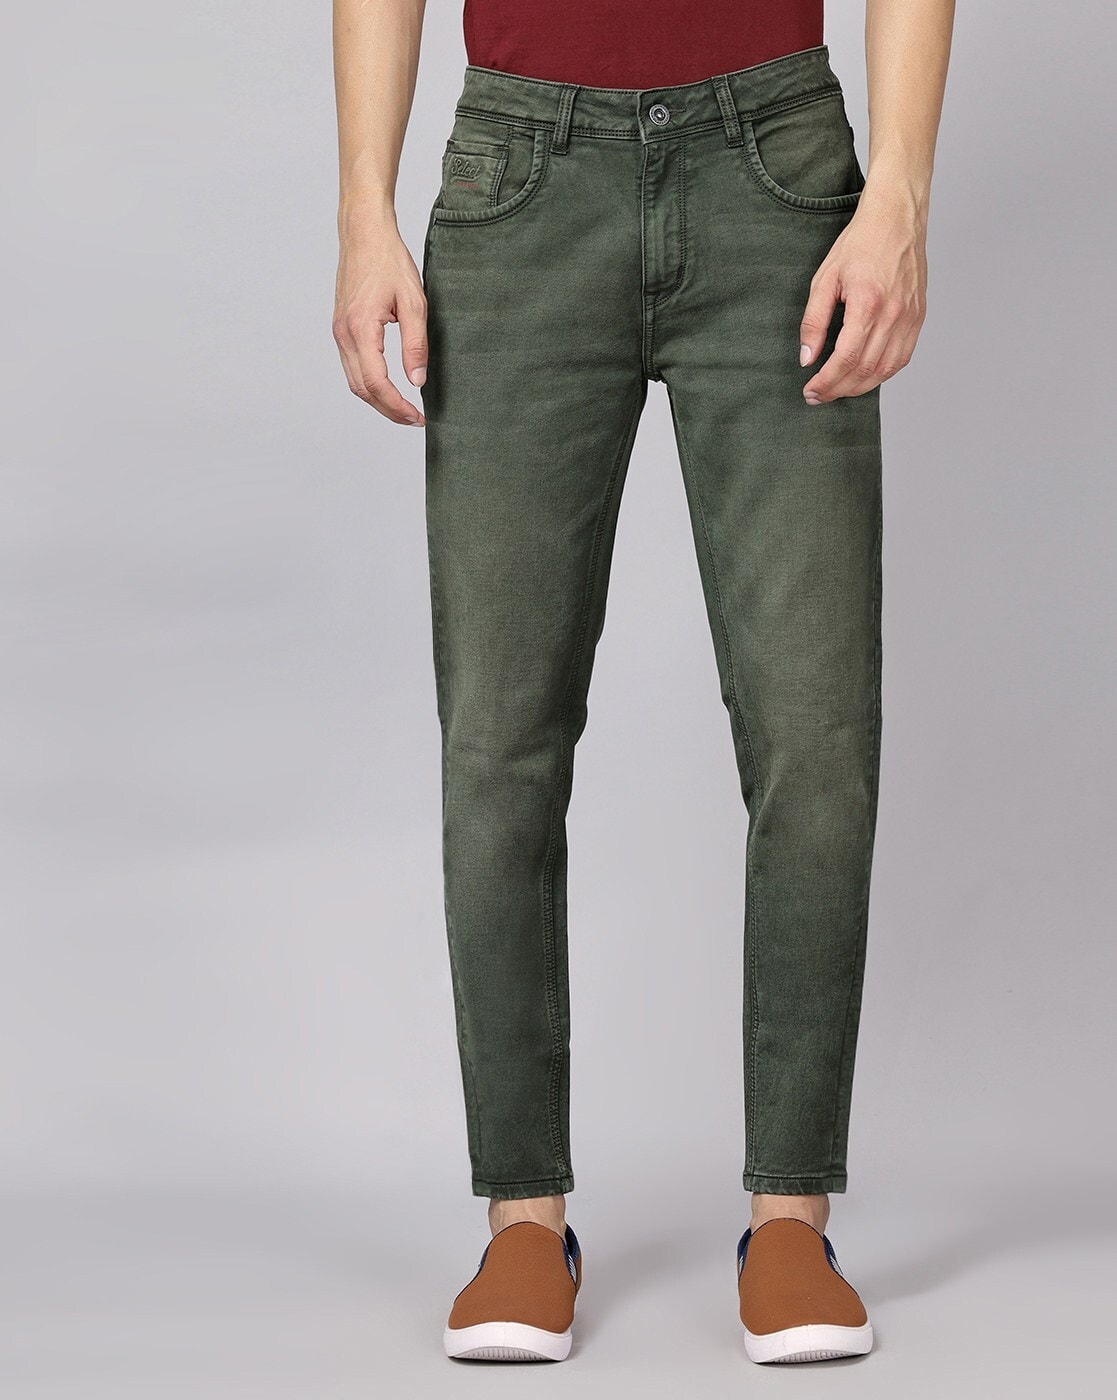 TheMogan Women's Basic Army Olive Green Low Rise 5 Pocket Stretch Denim  Skinny Jeans 3/25 - Walmart.com